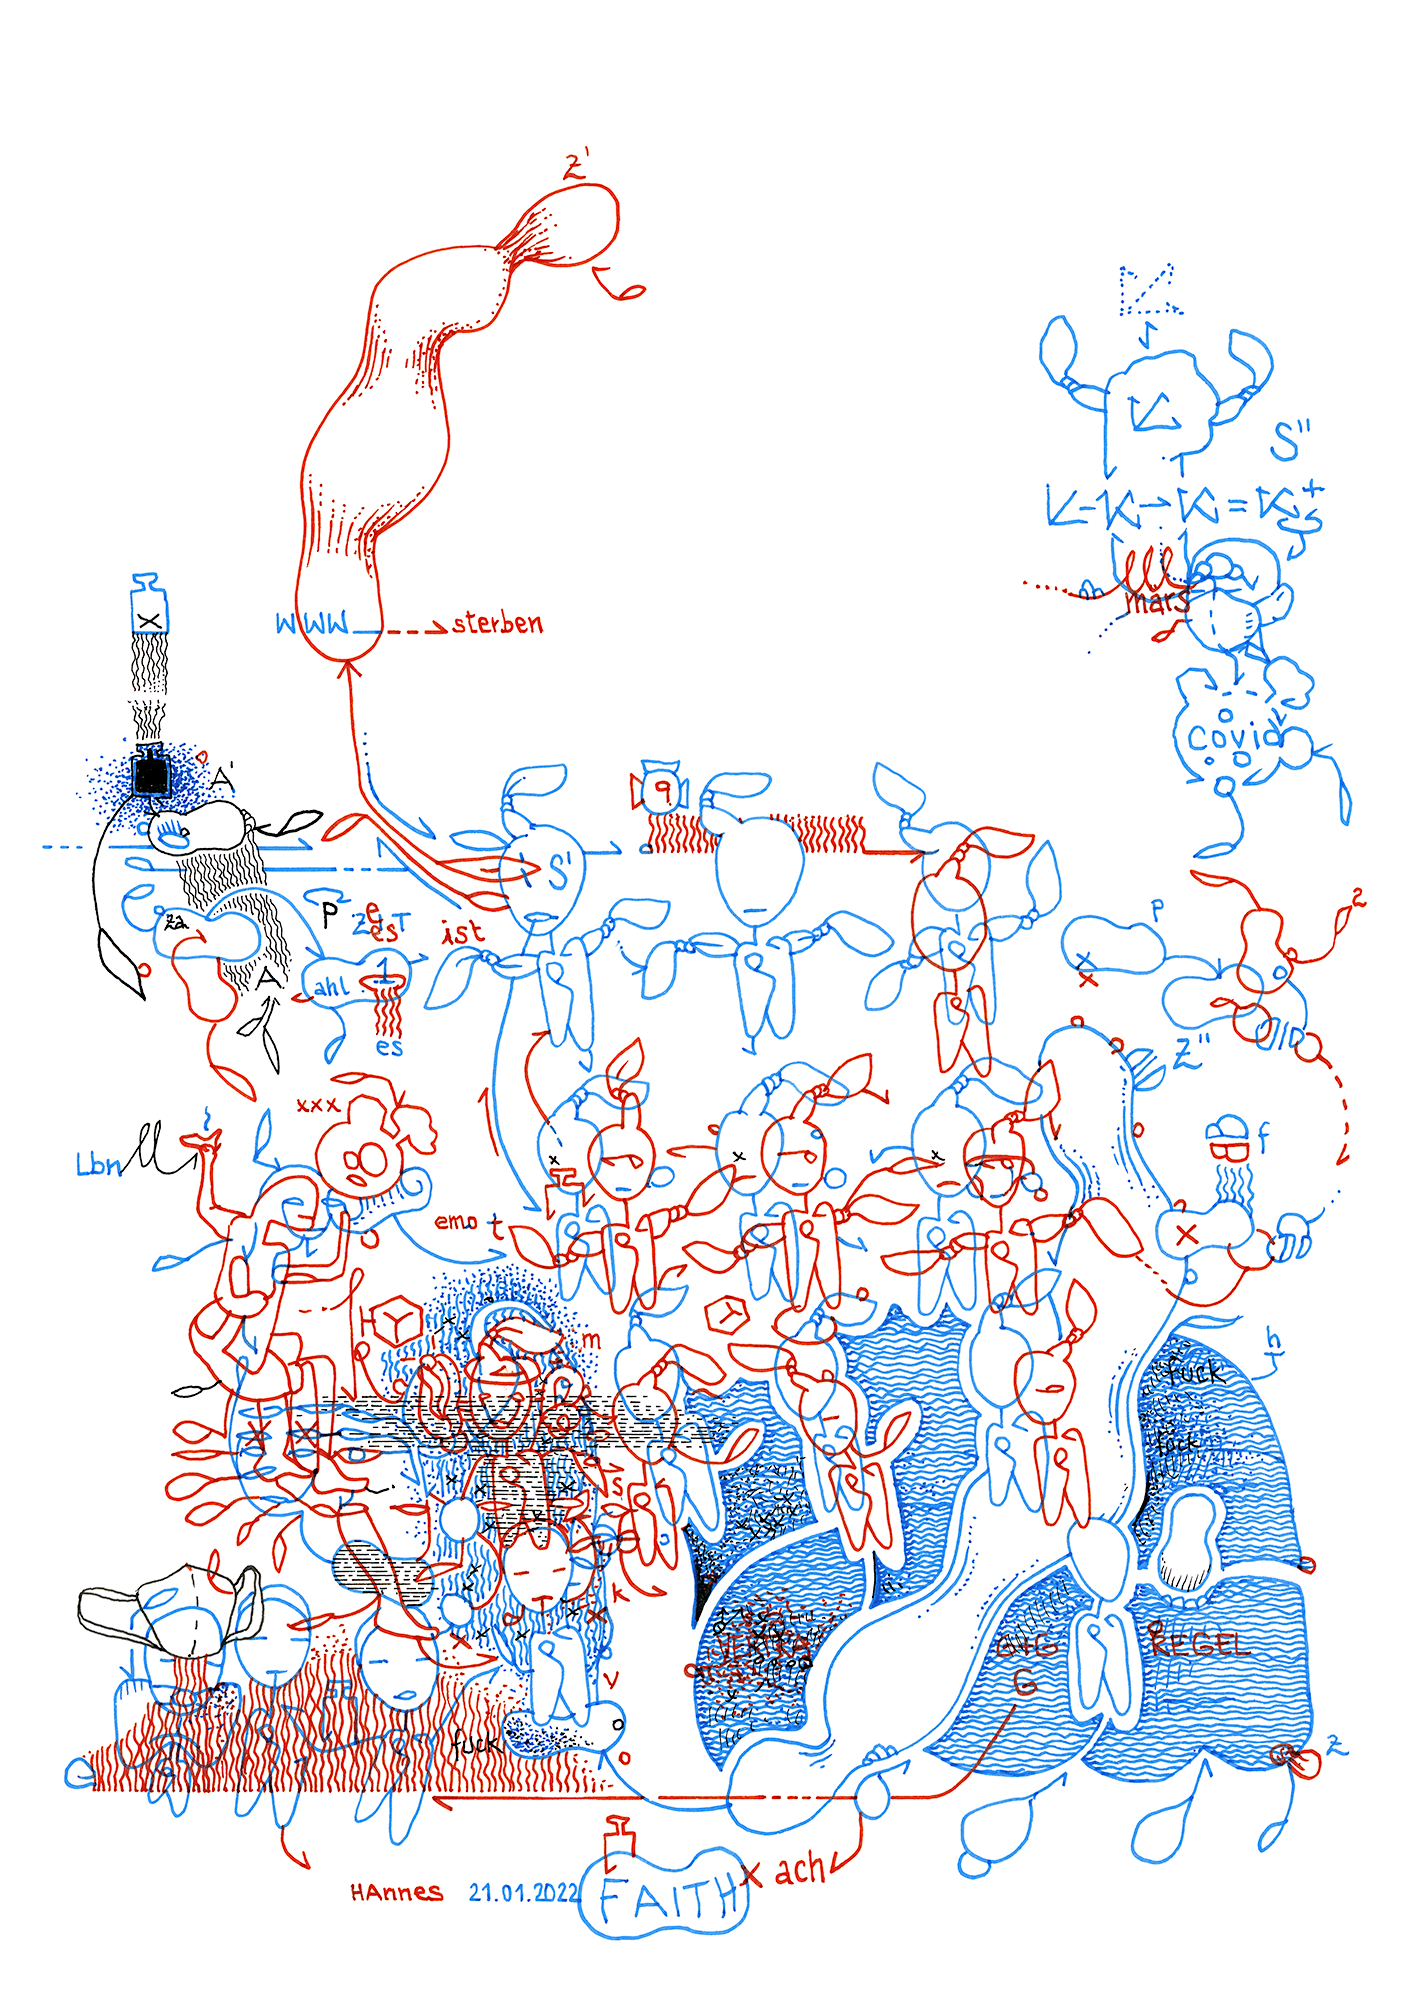 Hannes Kater: Tageszeichnung (Zeichnung/drawing) vom 21.01.2022 (1414 x 2000 Pixel)